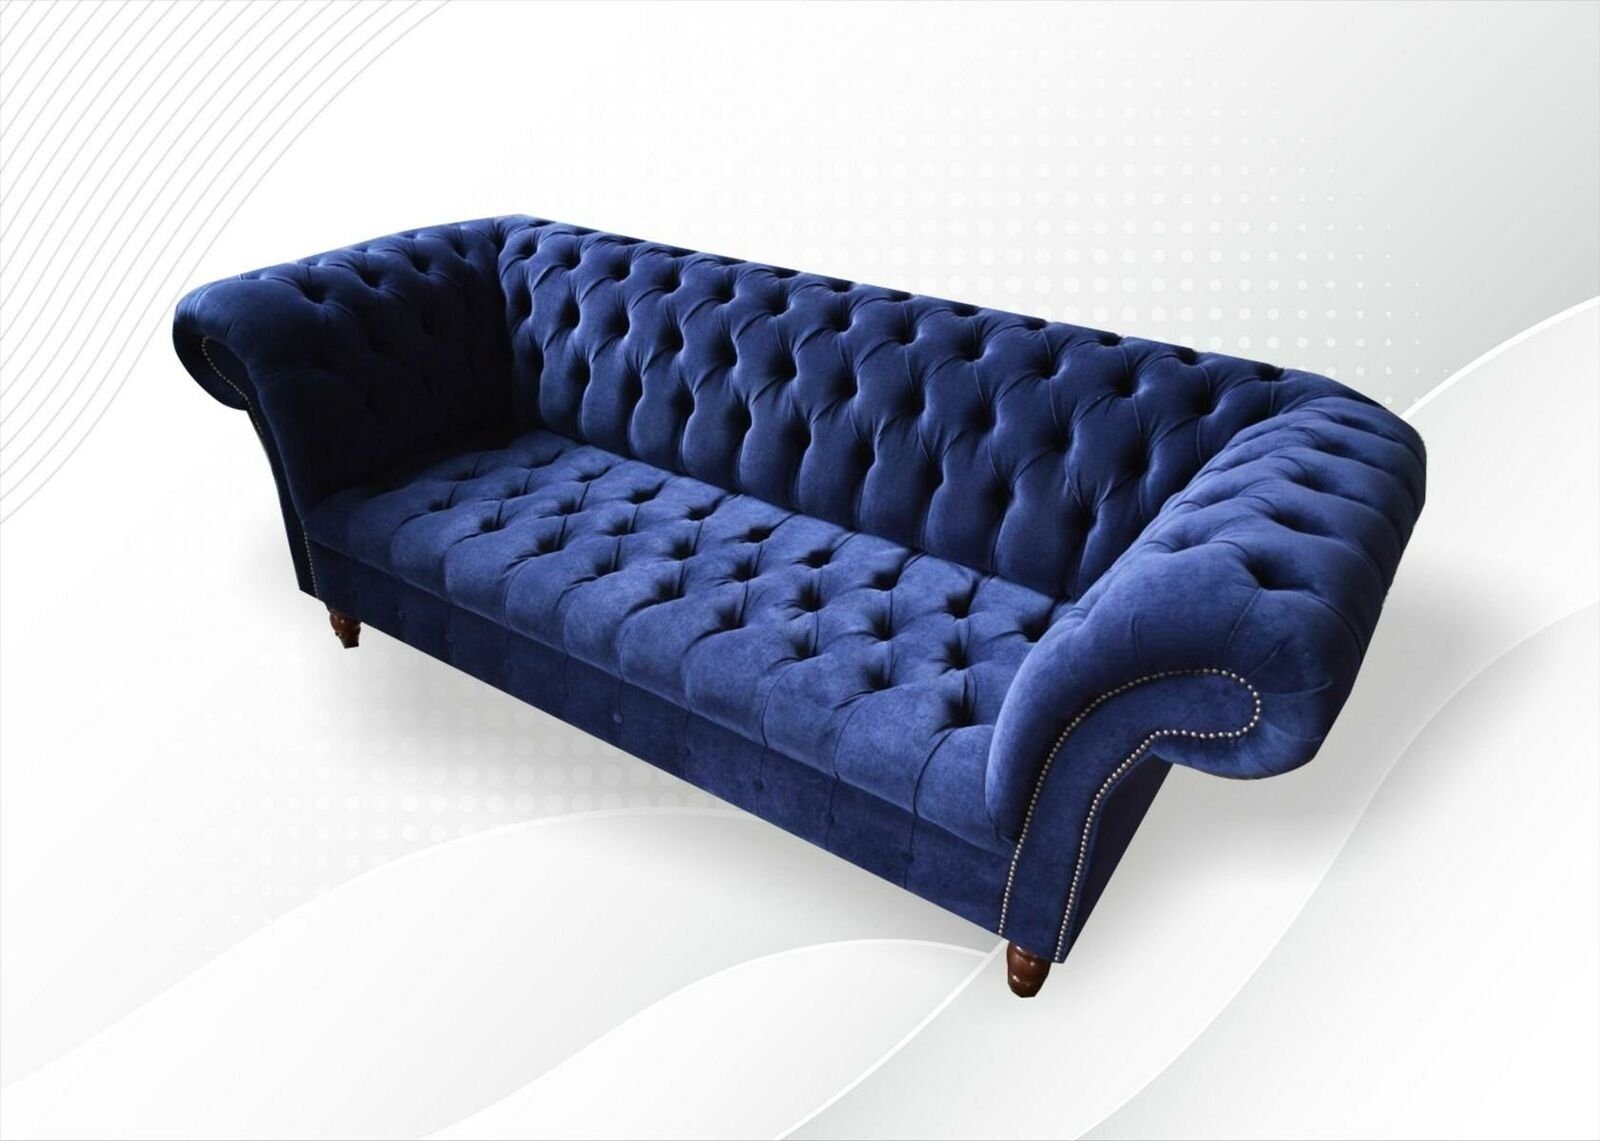 Chesterfield-Sofa Europe in 3-er Made Chesterfield Neu, Möbel luxus JVmoebel Dunkelblauer Textilmöbel